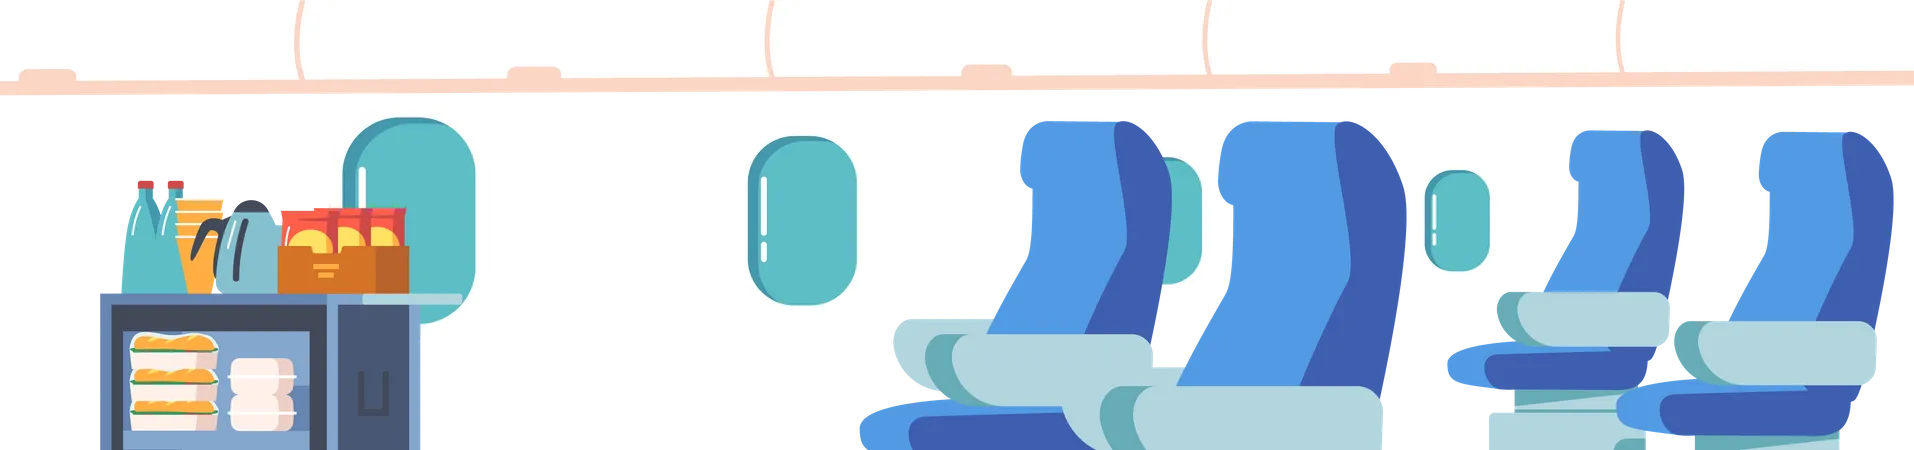 Interior de avião vazio  Ilustração